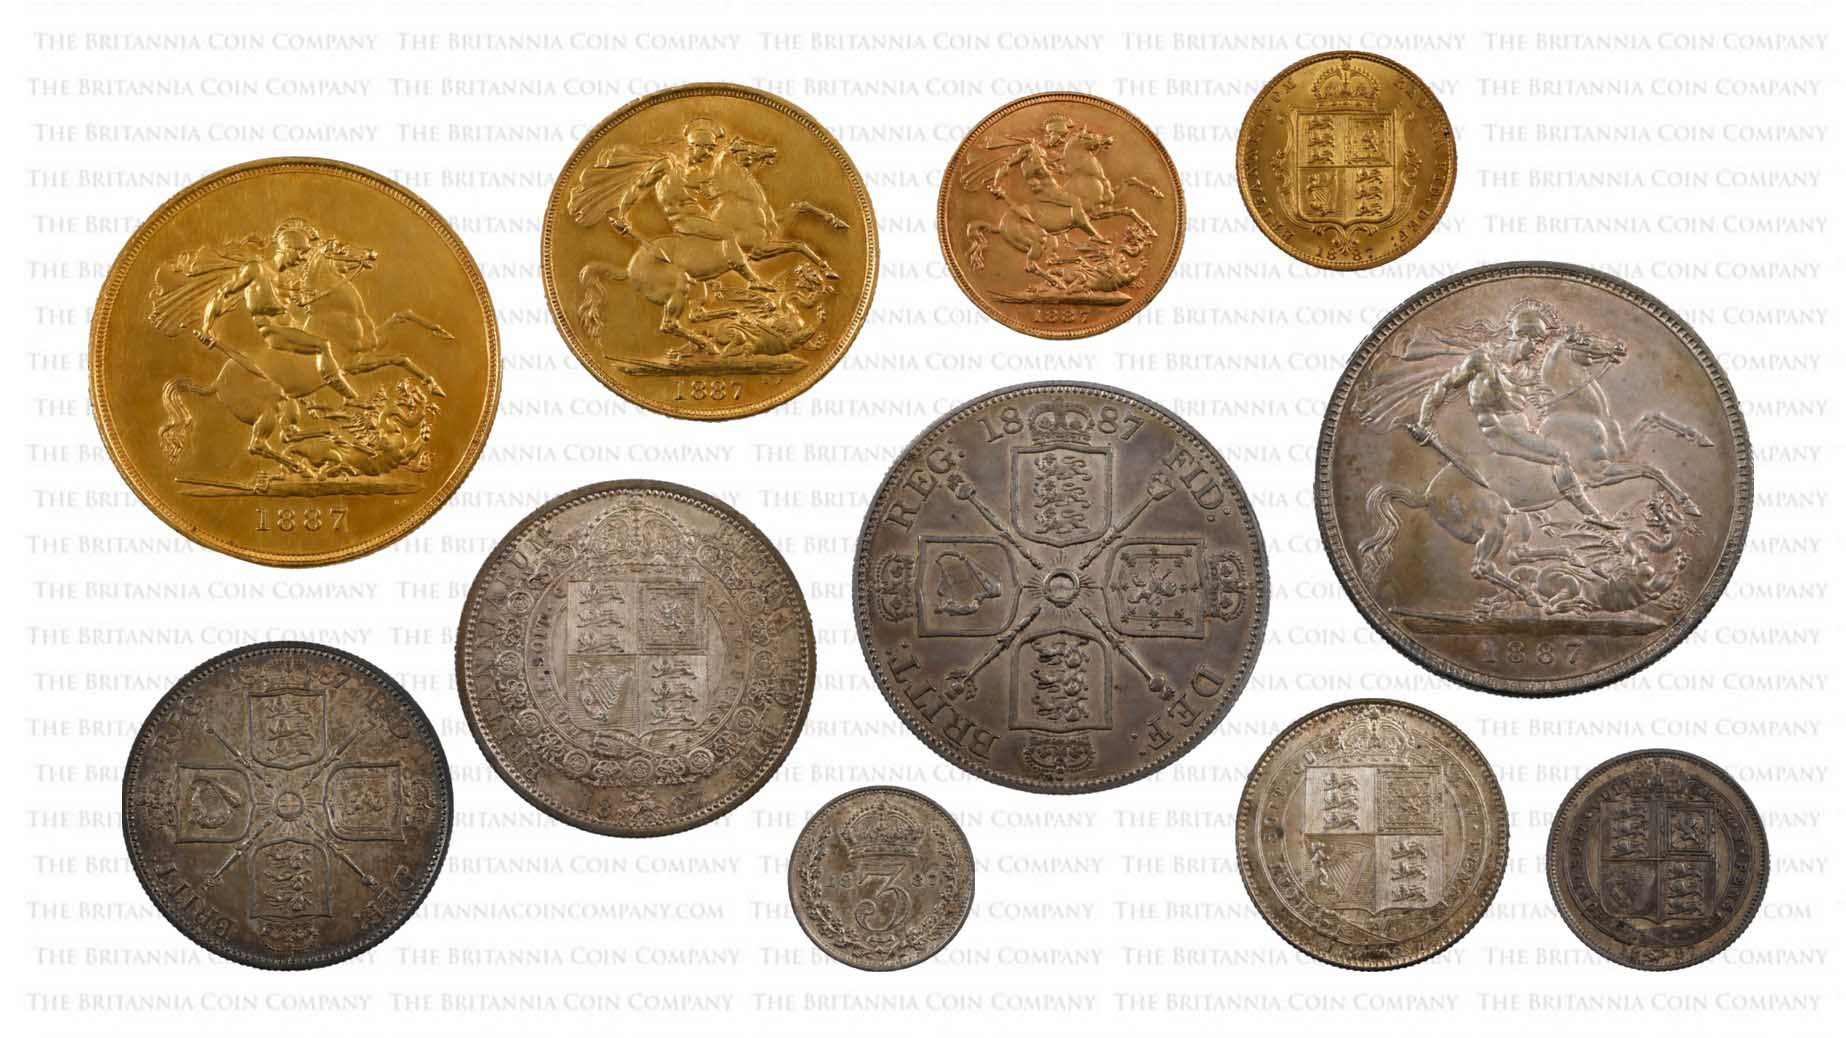 Reverses of Golden Jubilee 1887 Jubilee Head coins.